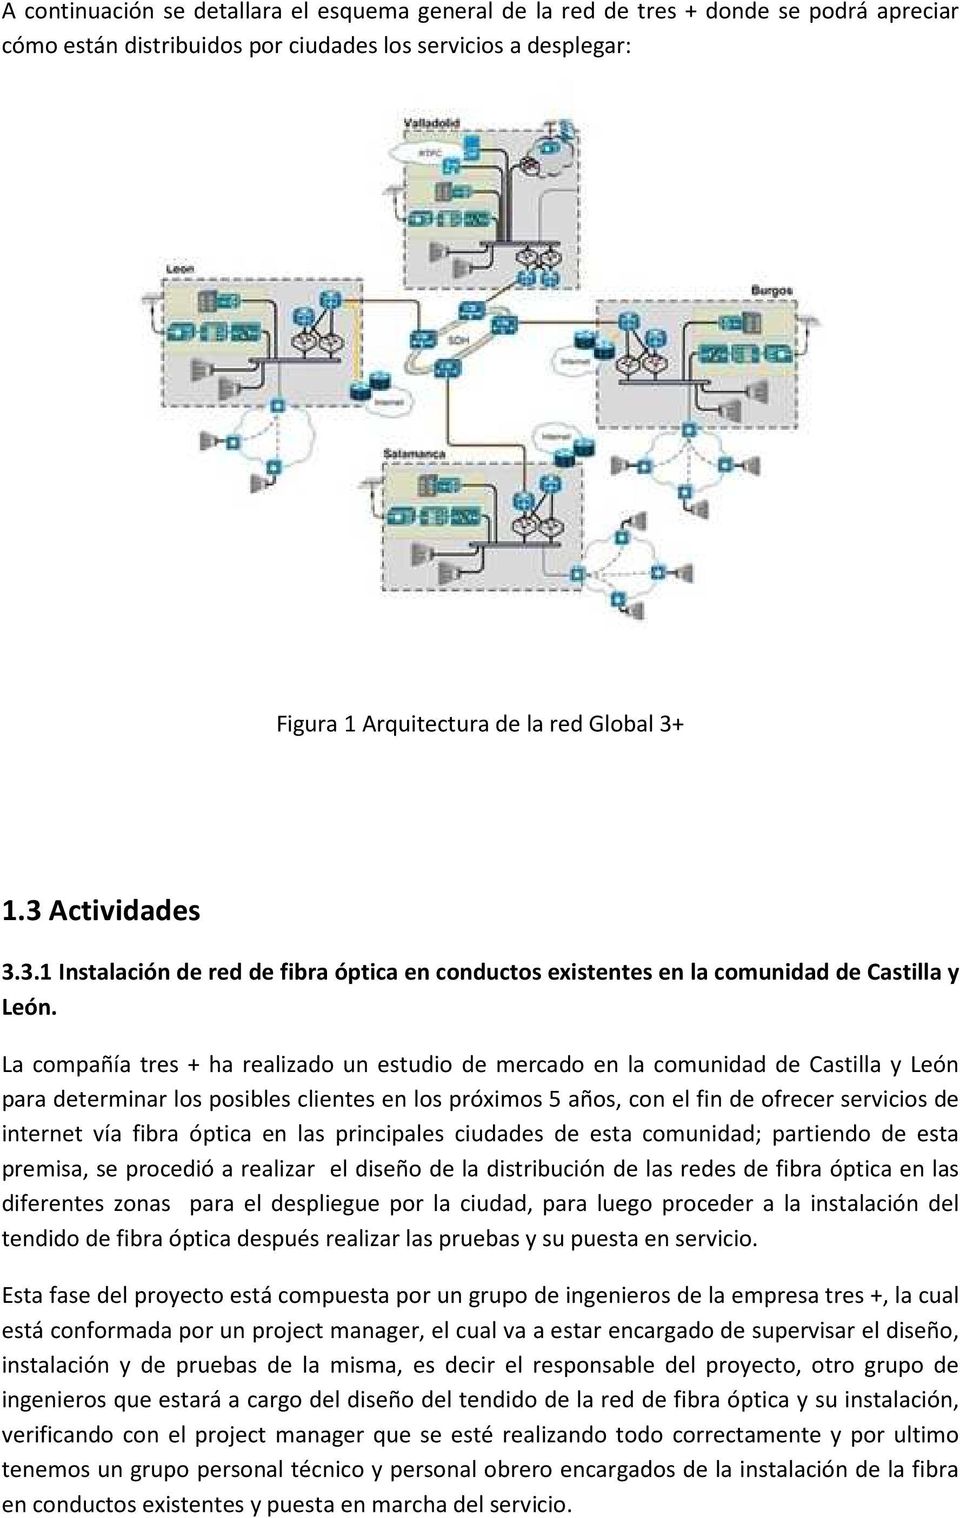 La compañía tres + ha realizado un estudio de mercado en la comunidad de Castilla y León para determinar los posibles clientes en los próximos 5 años, con el fin de ofrecer servicios de internet vía